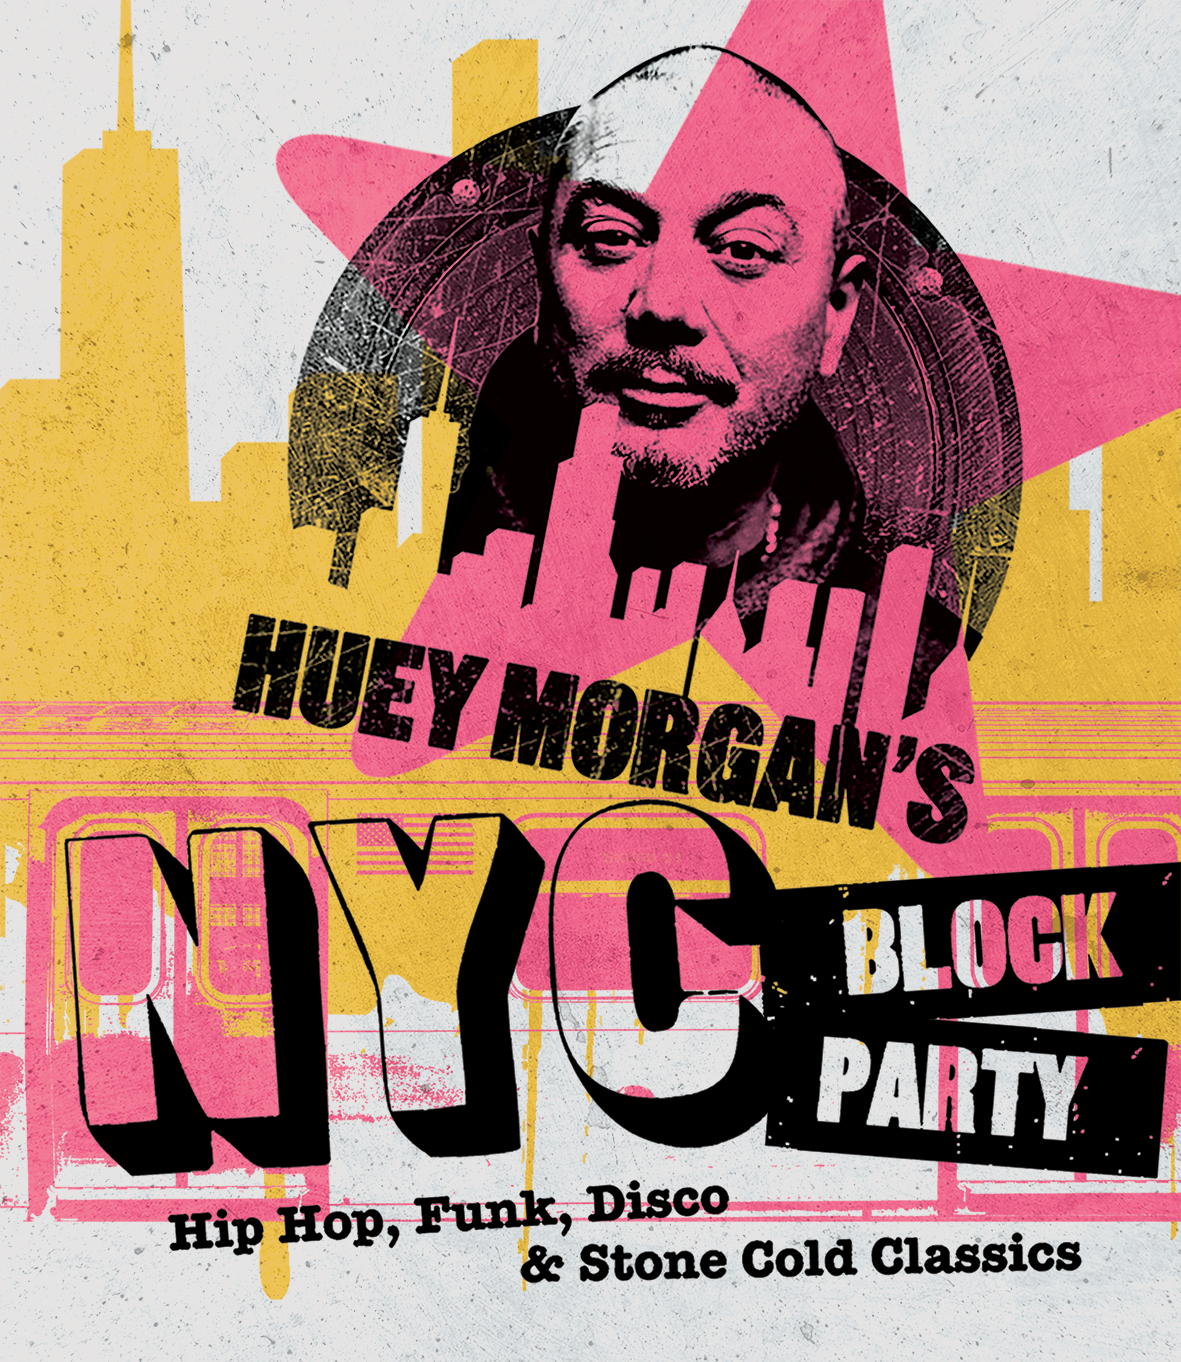 Promo for Huey Morgan's NYC Block Party